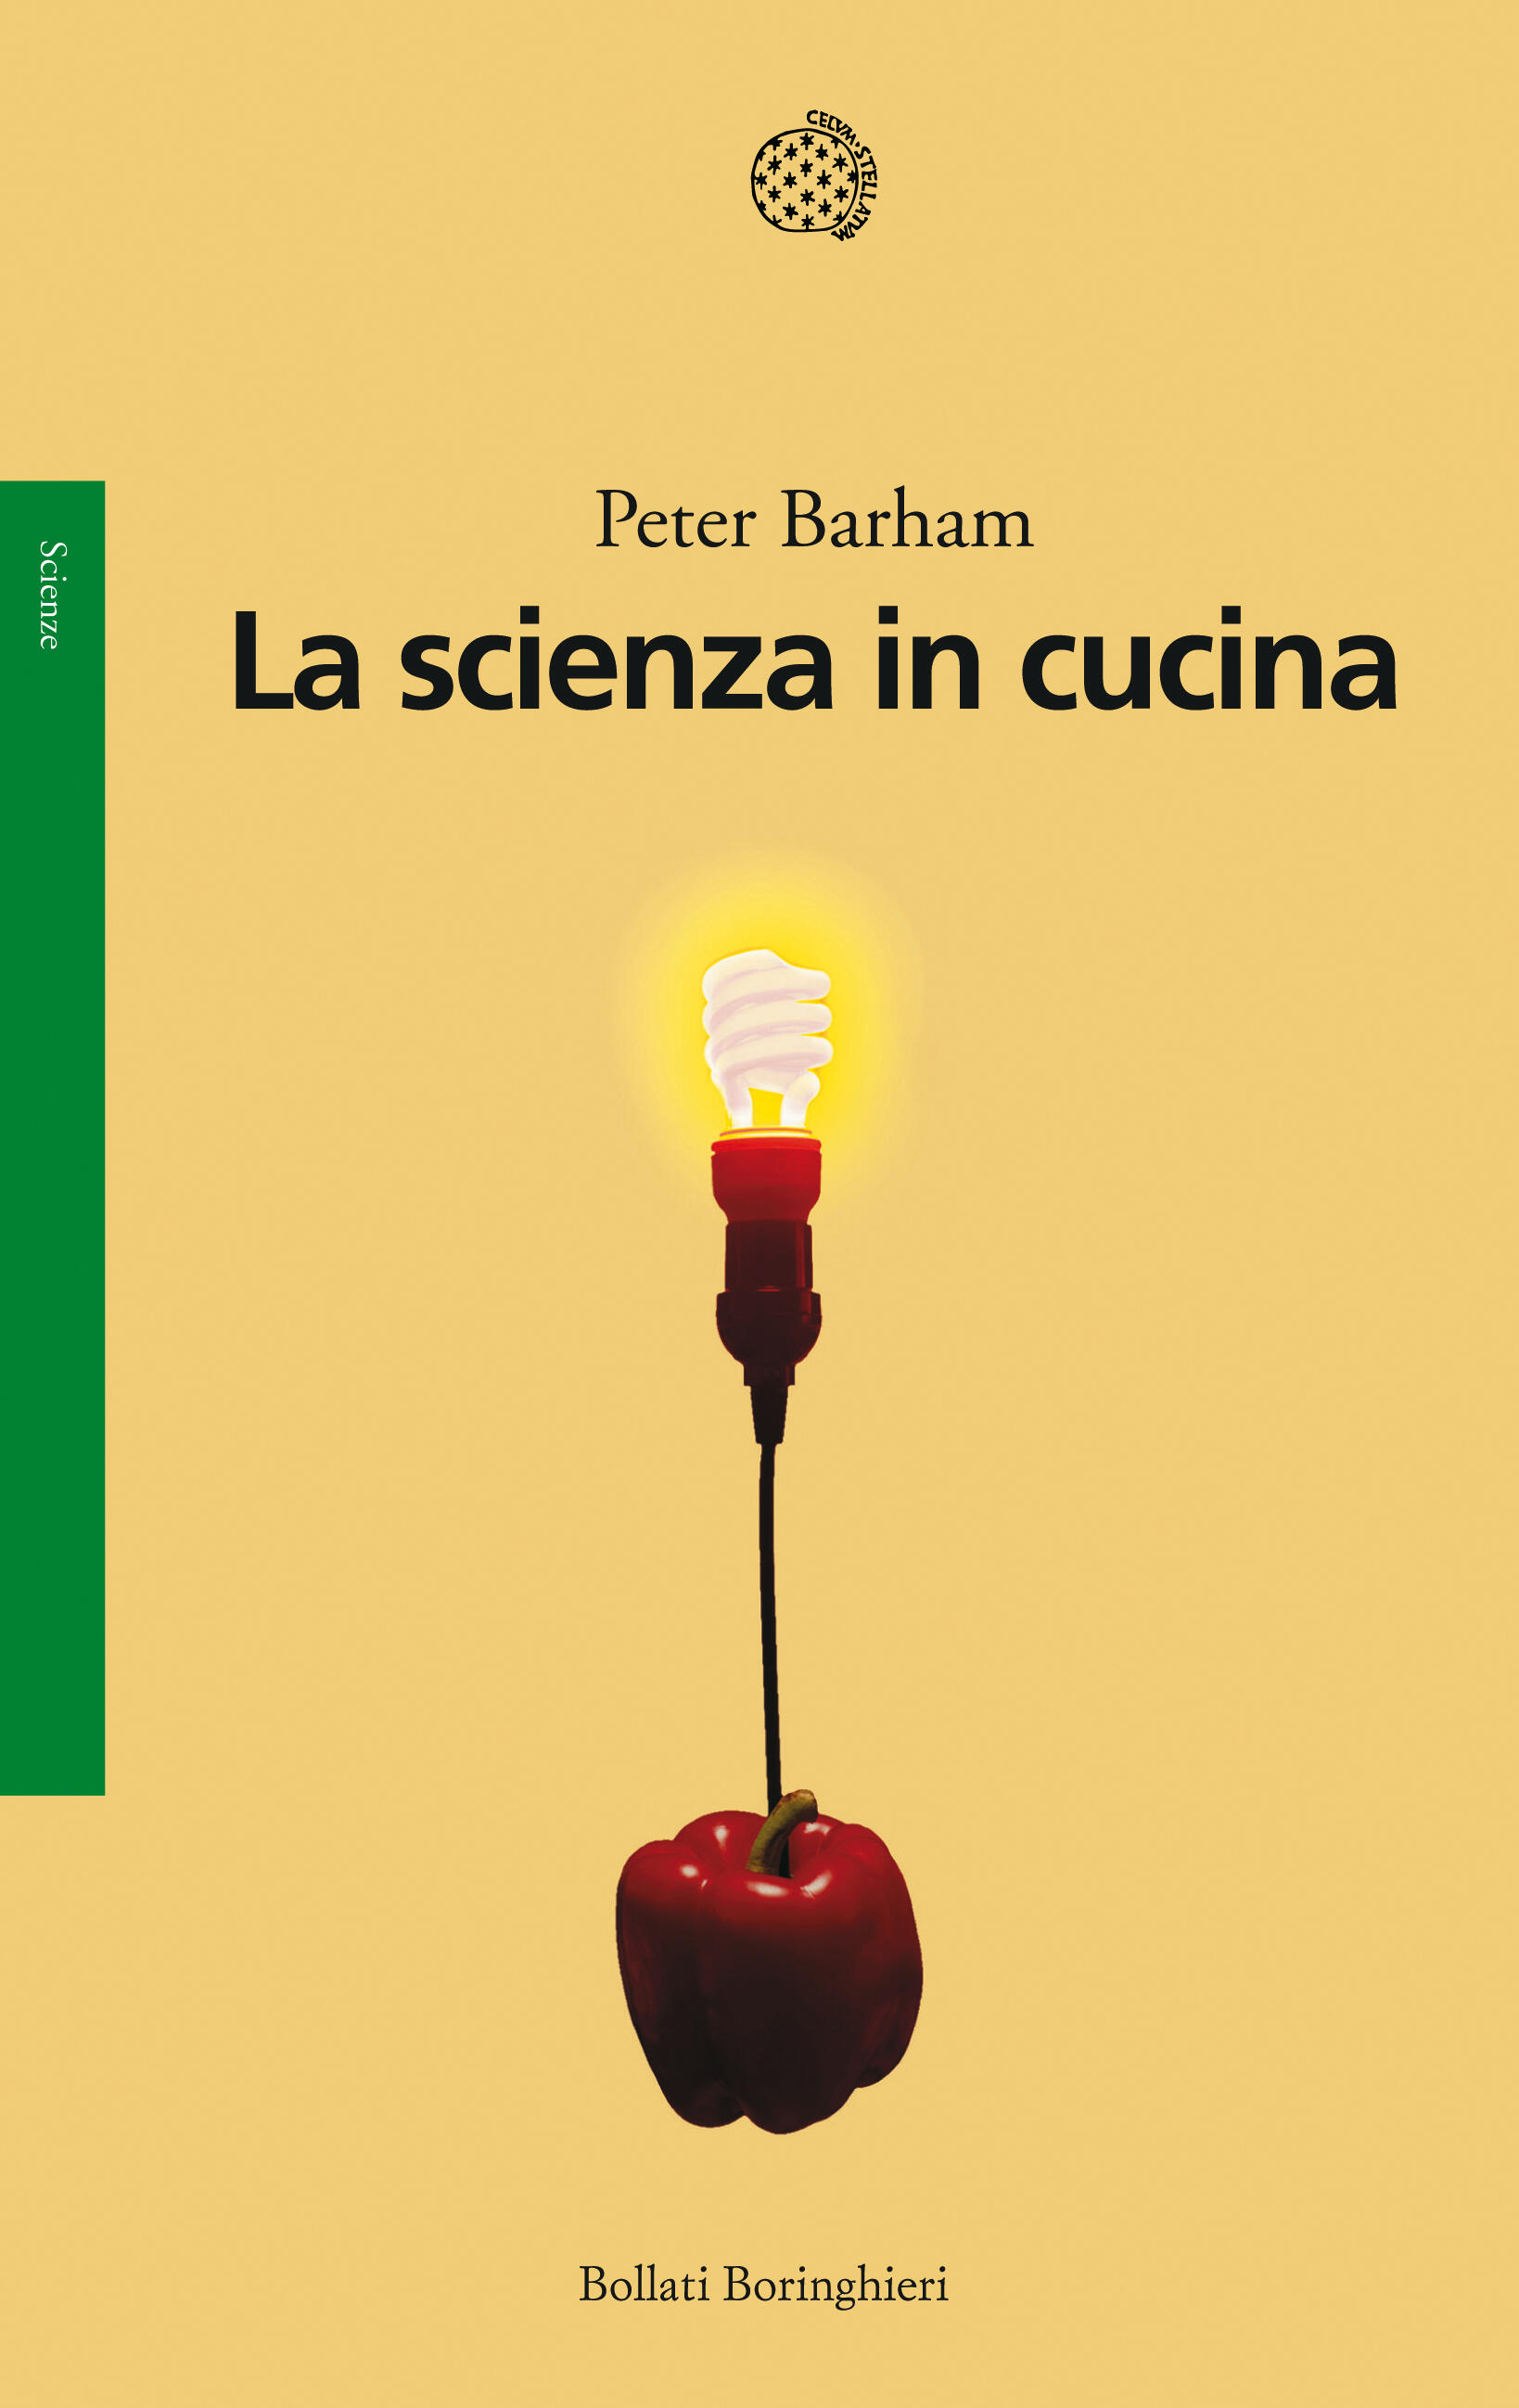 I 10 migliori libri sulla scienza della cucina – Notizie scientifiche.it